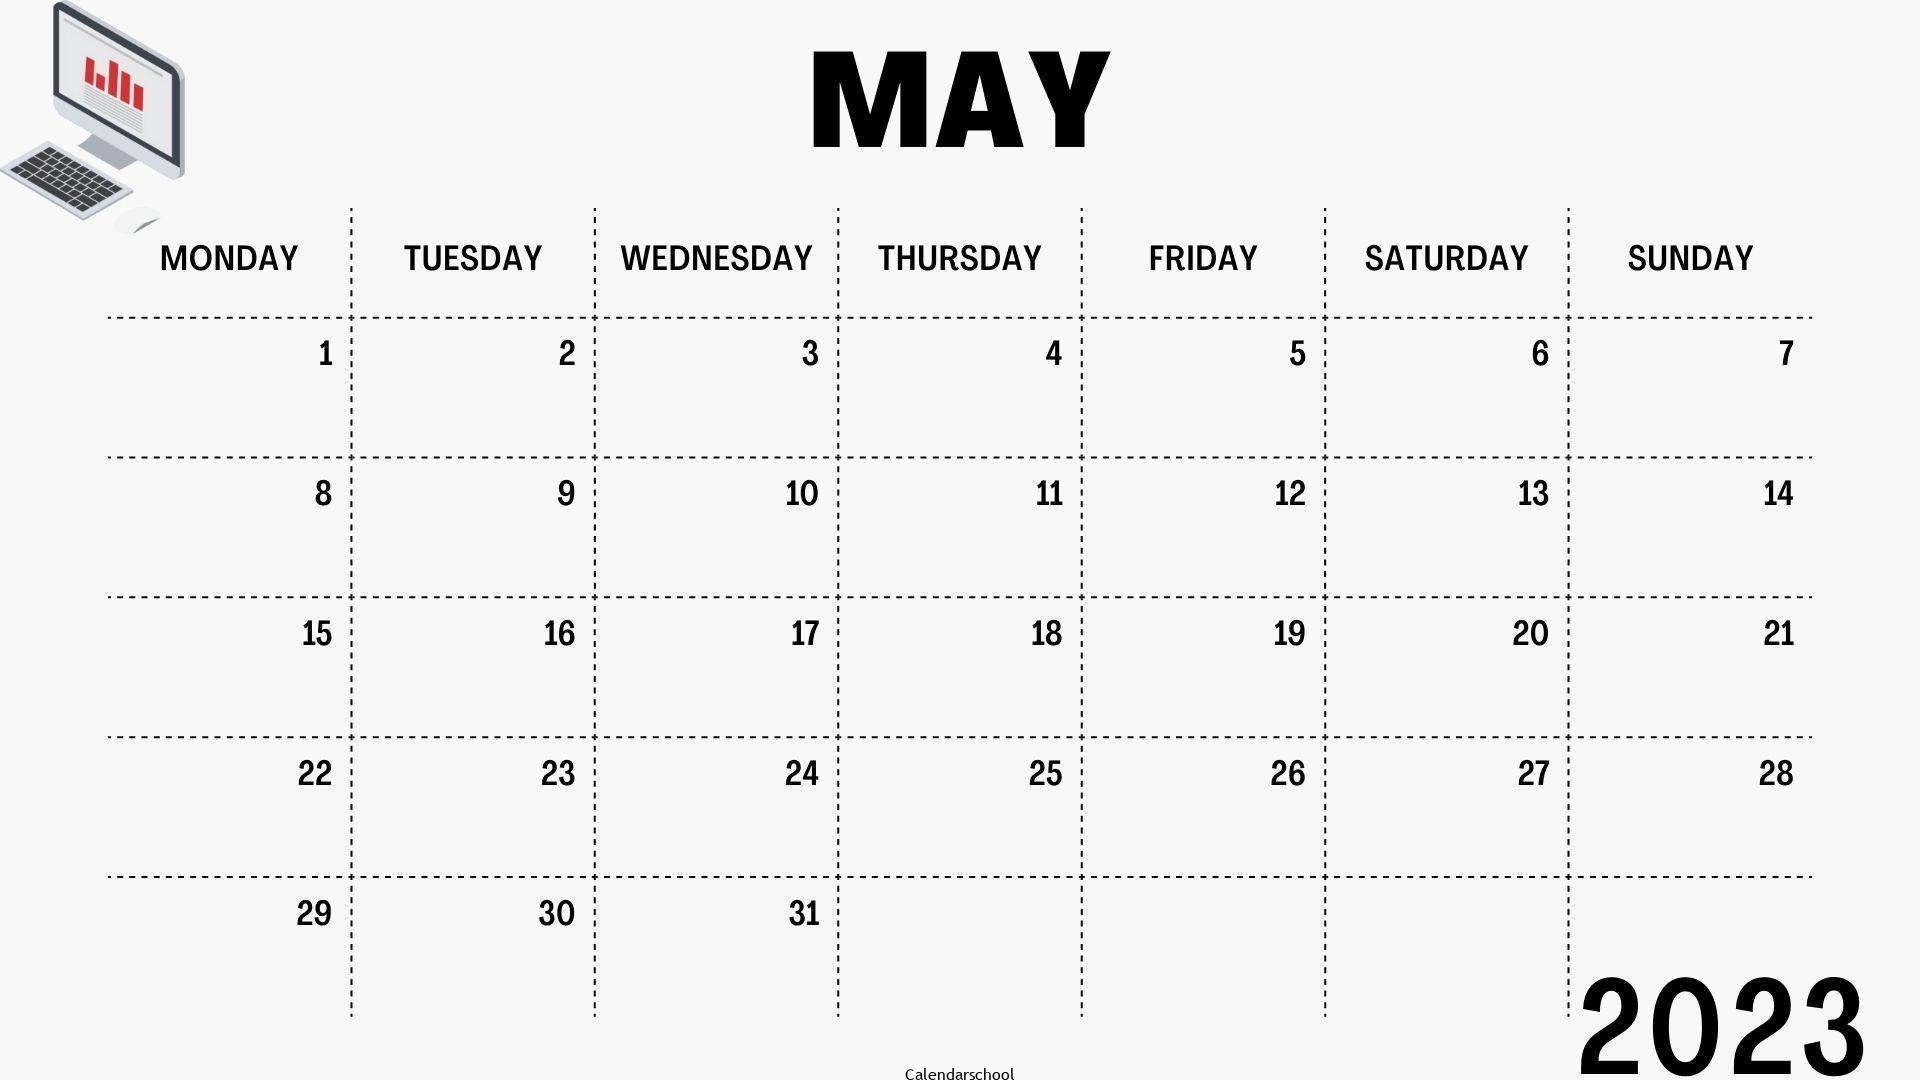 Islamic Calendar 2023 May